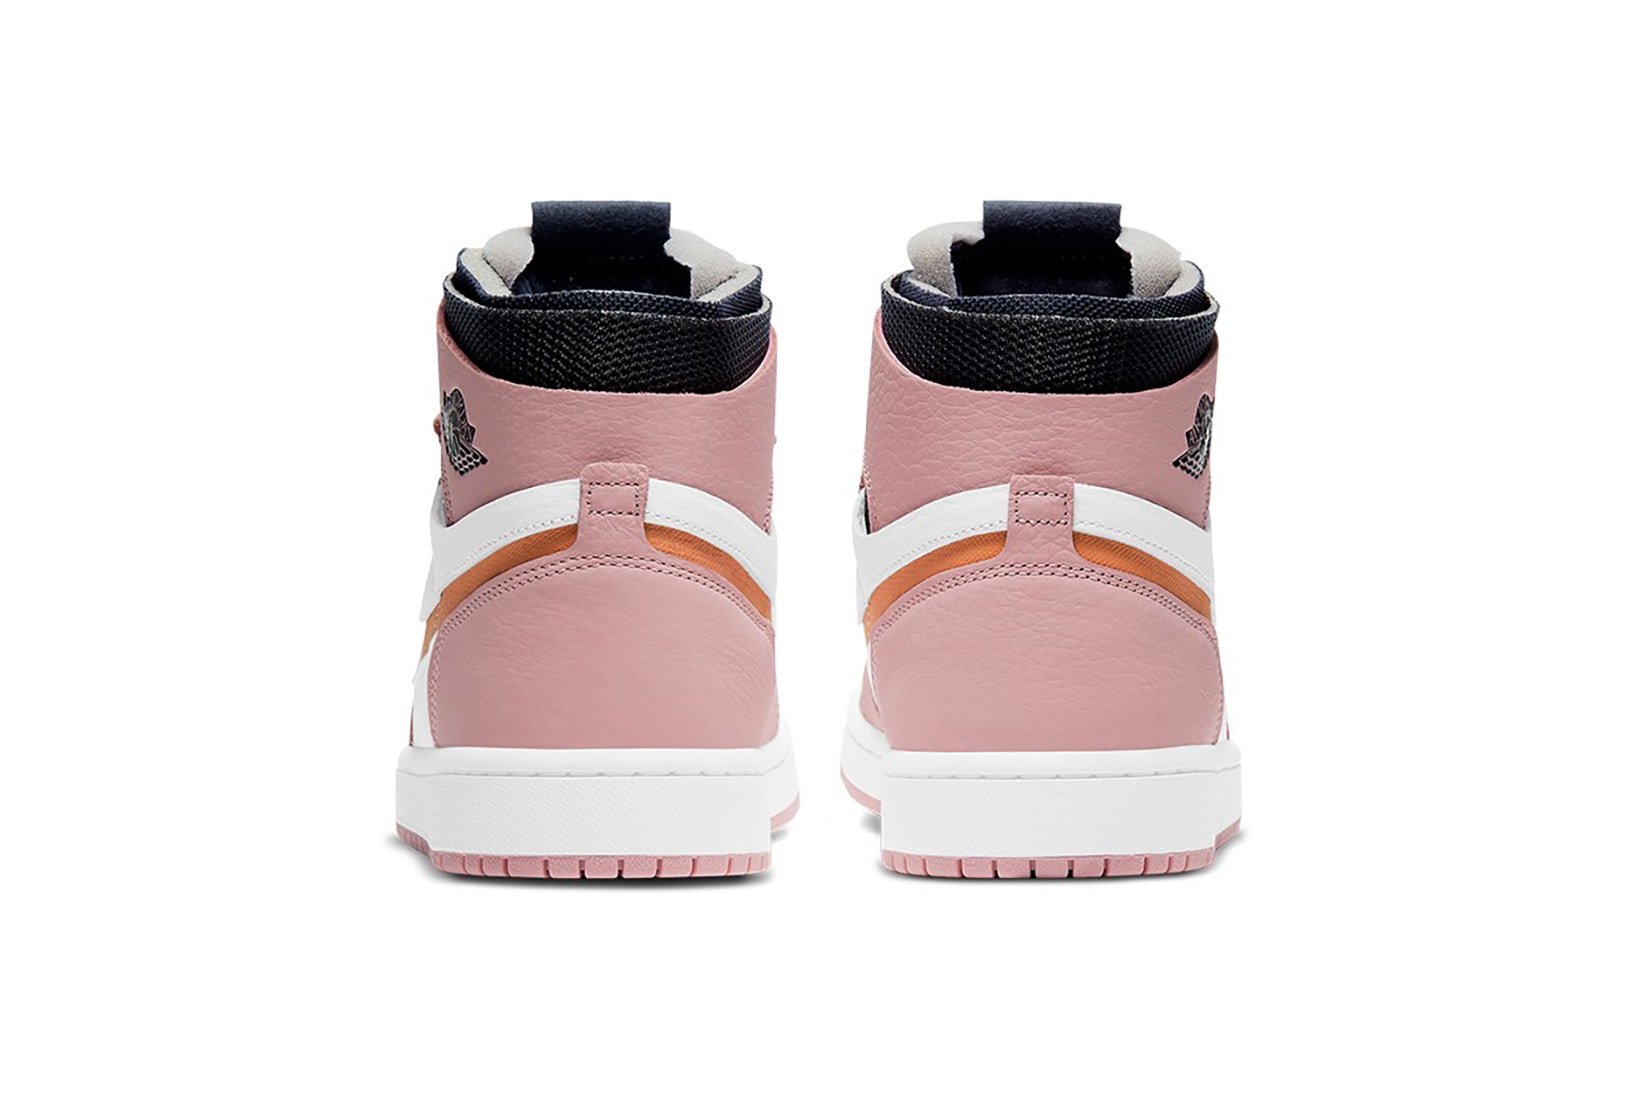 nike air jordan 1 high zoom cmft sneakers pink glaze black orange white colorway shoes footwear sneakerhead heel